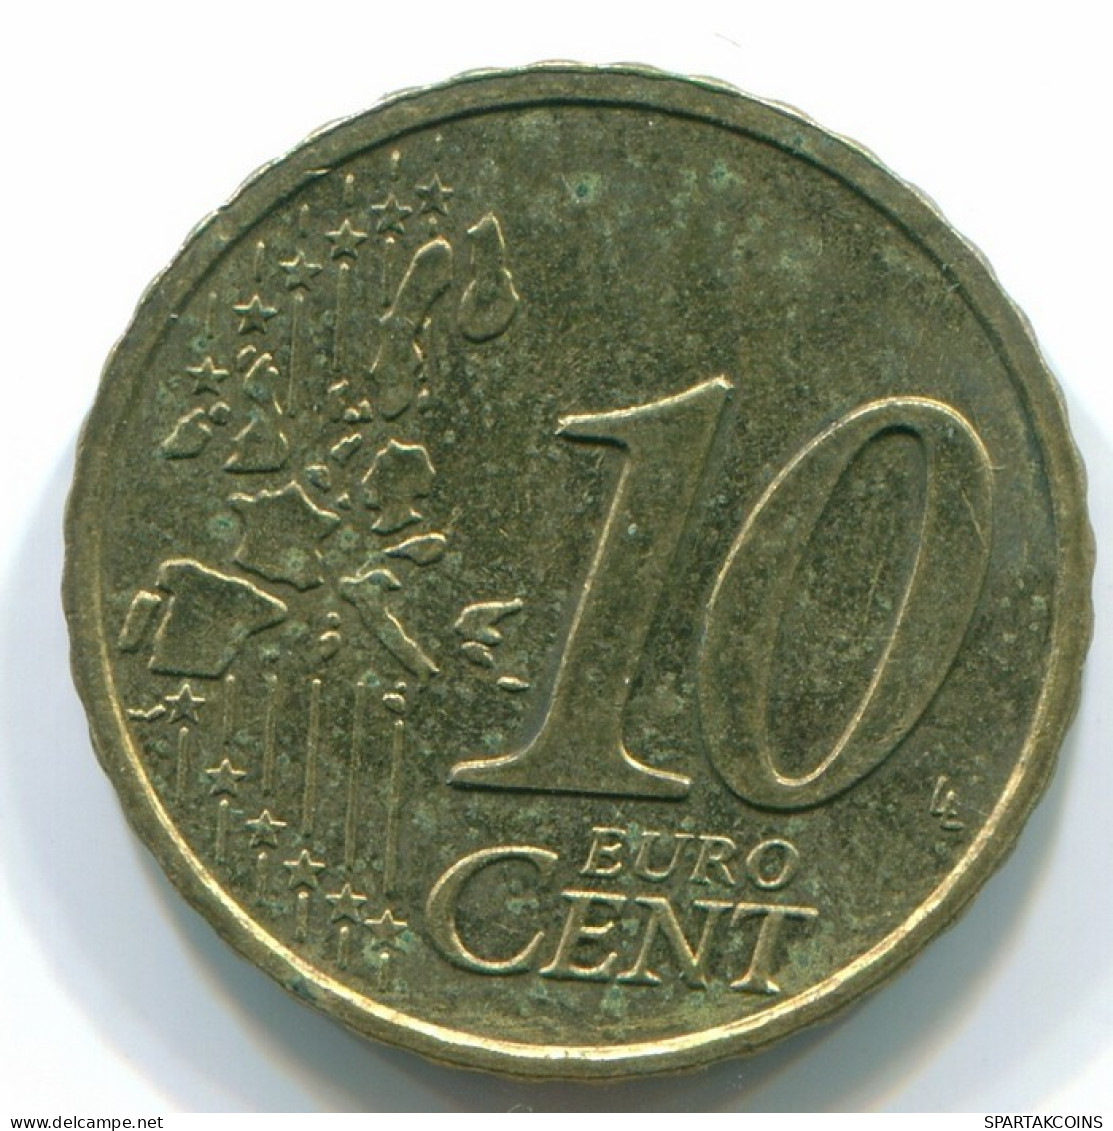 10 EURO CENT 2003 FRANCE Coin AUNC #FR1219.1.U.A - France